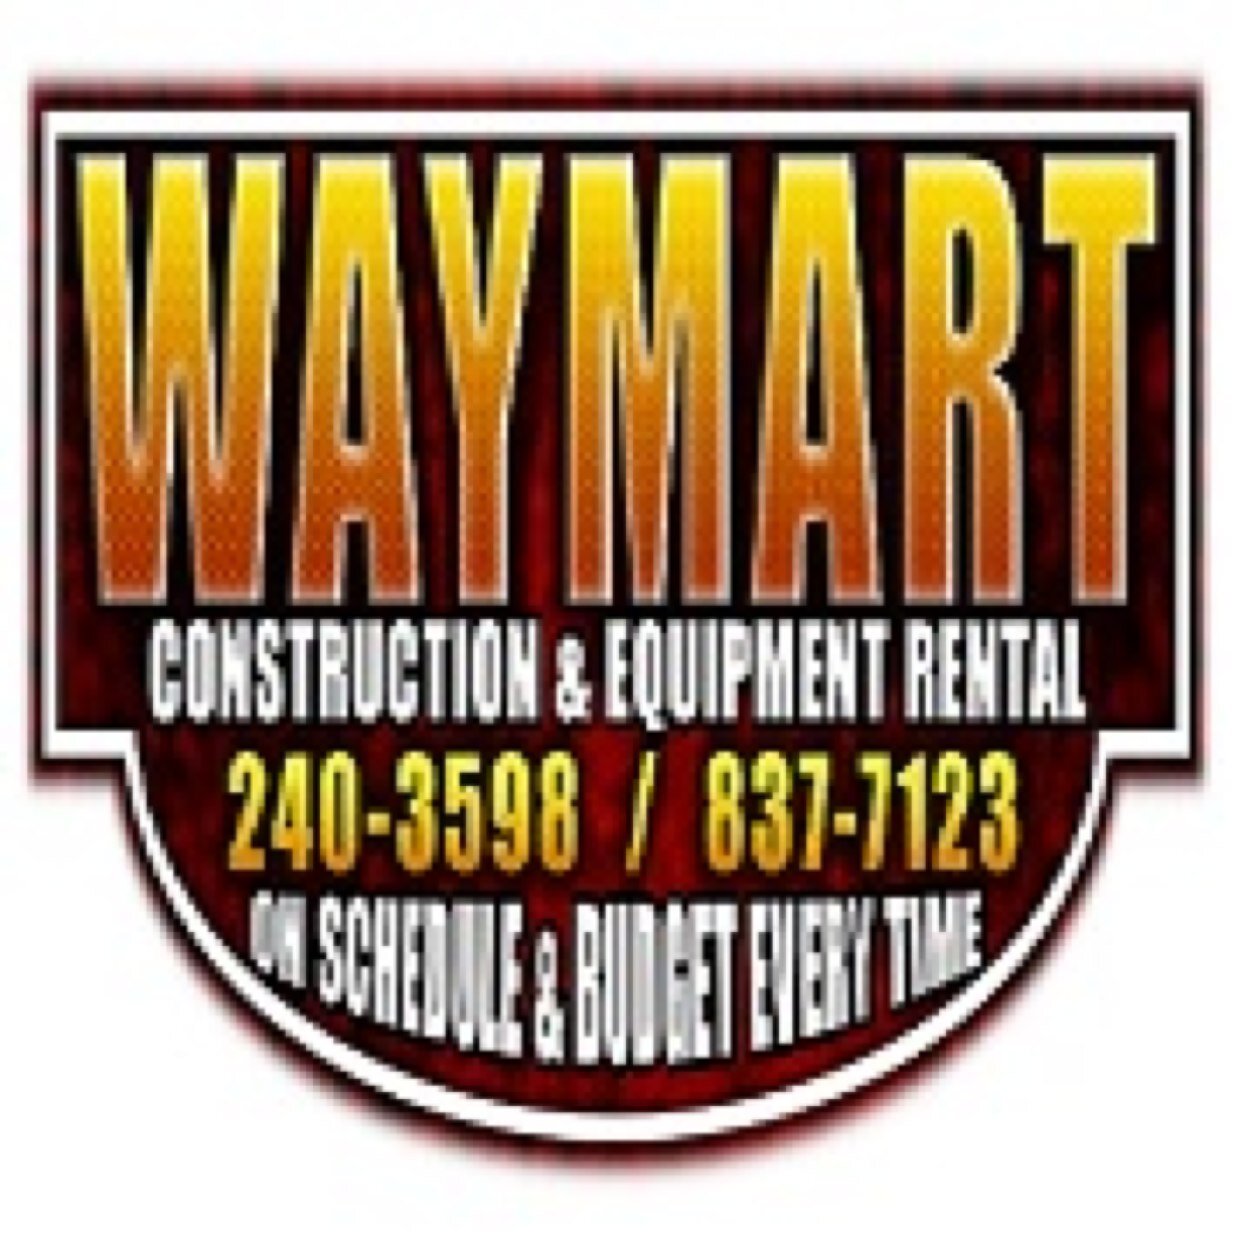 Waymart Construction